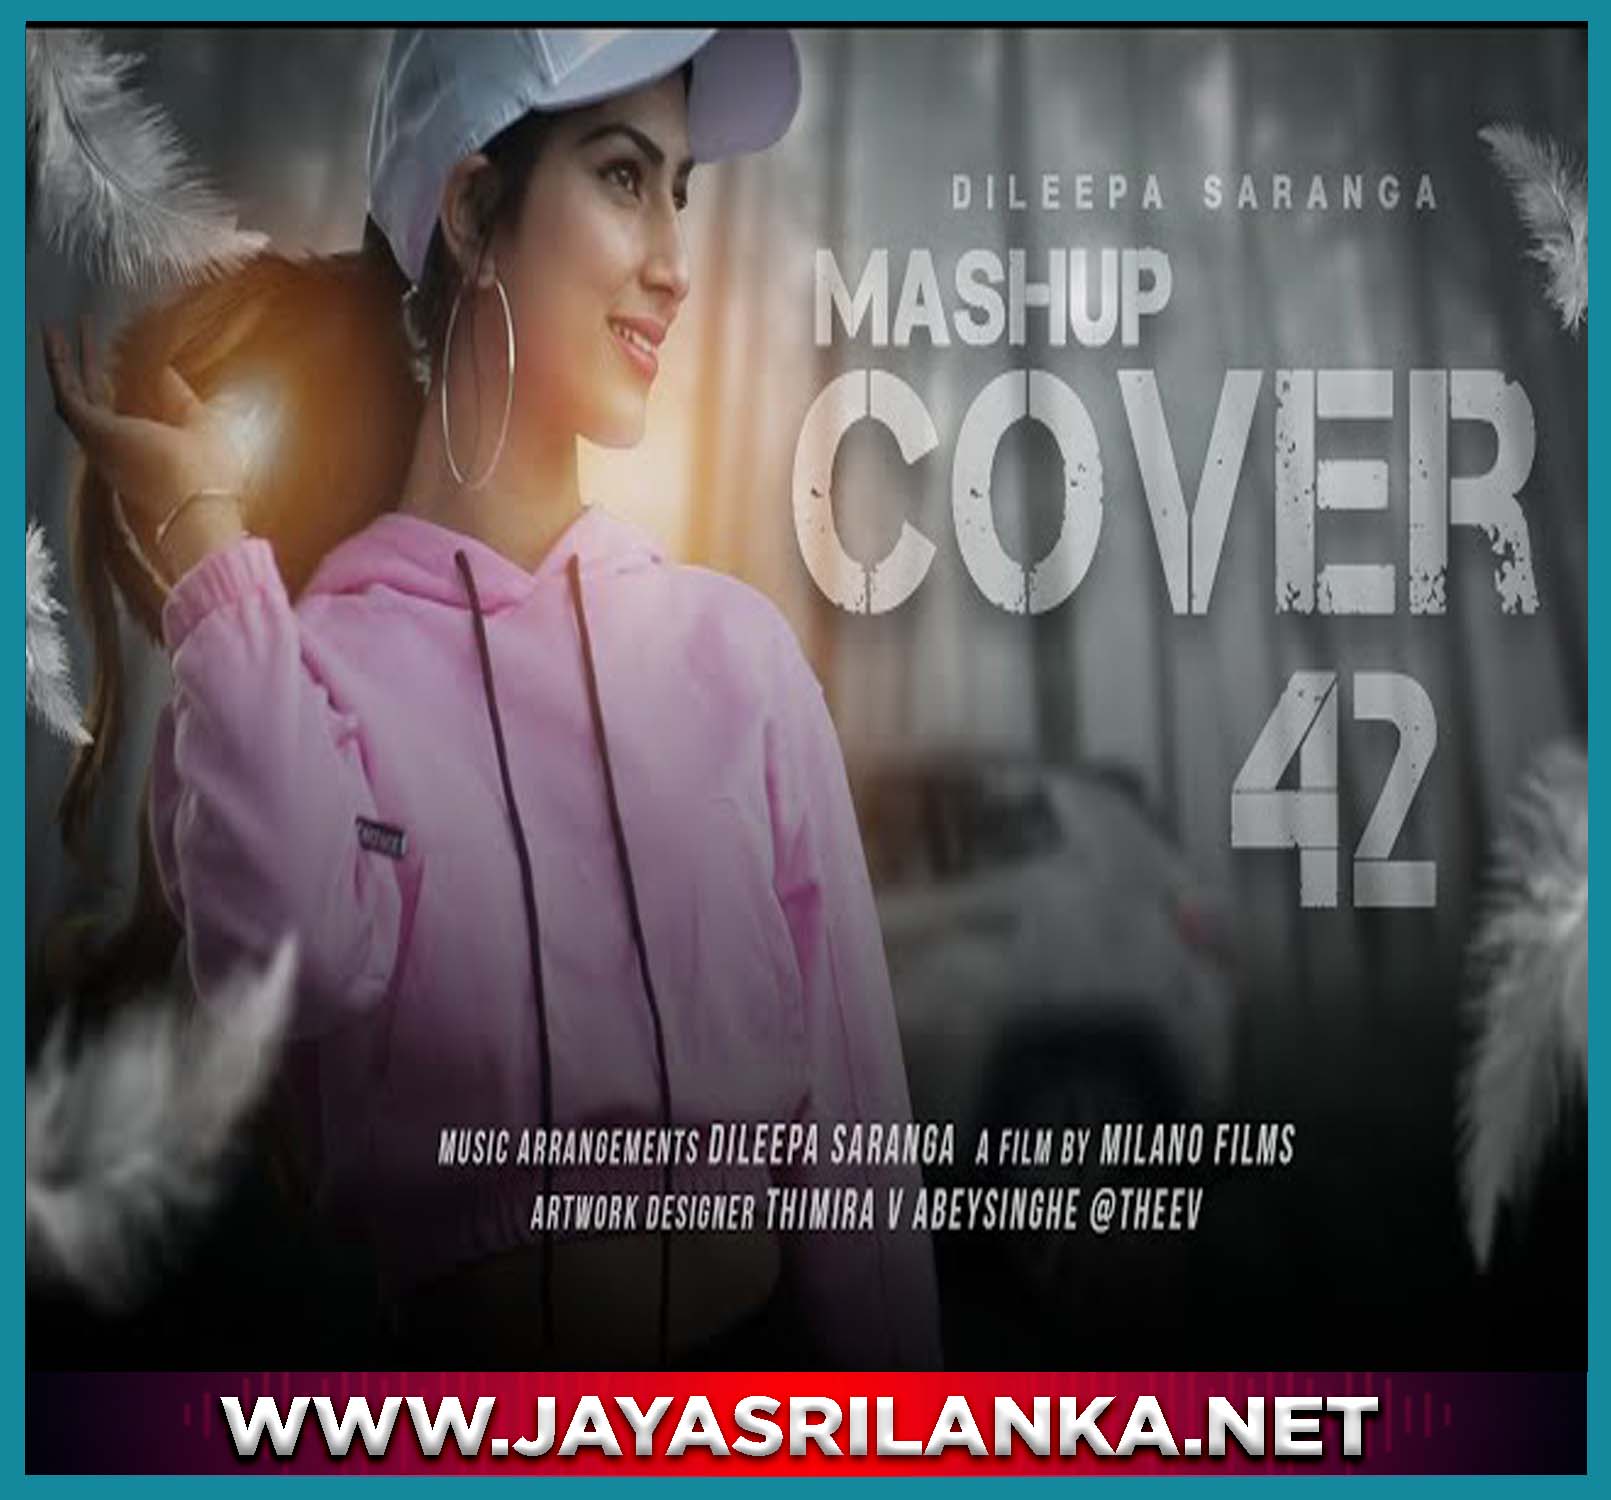 Mashup Cover 42